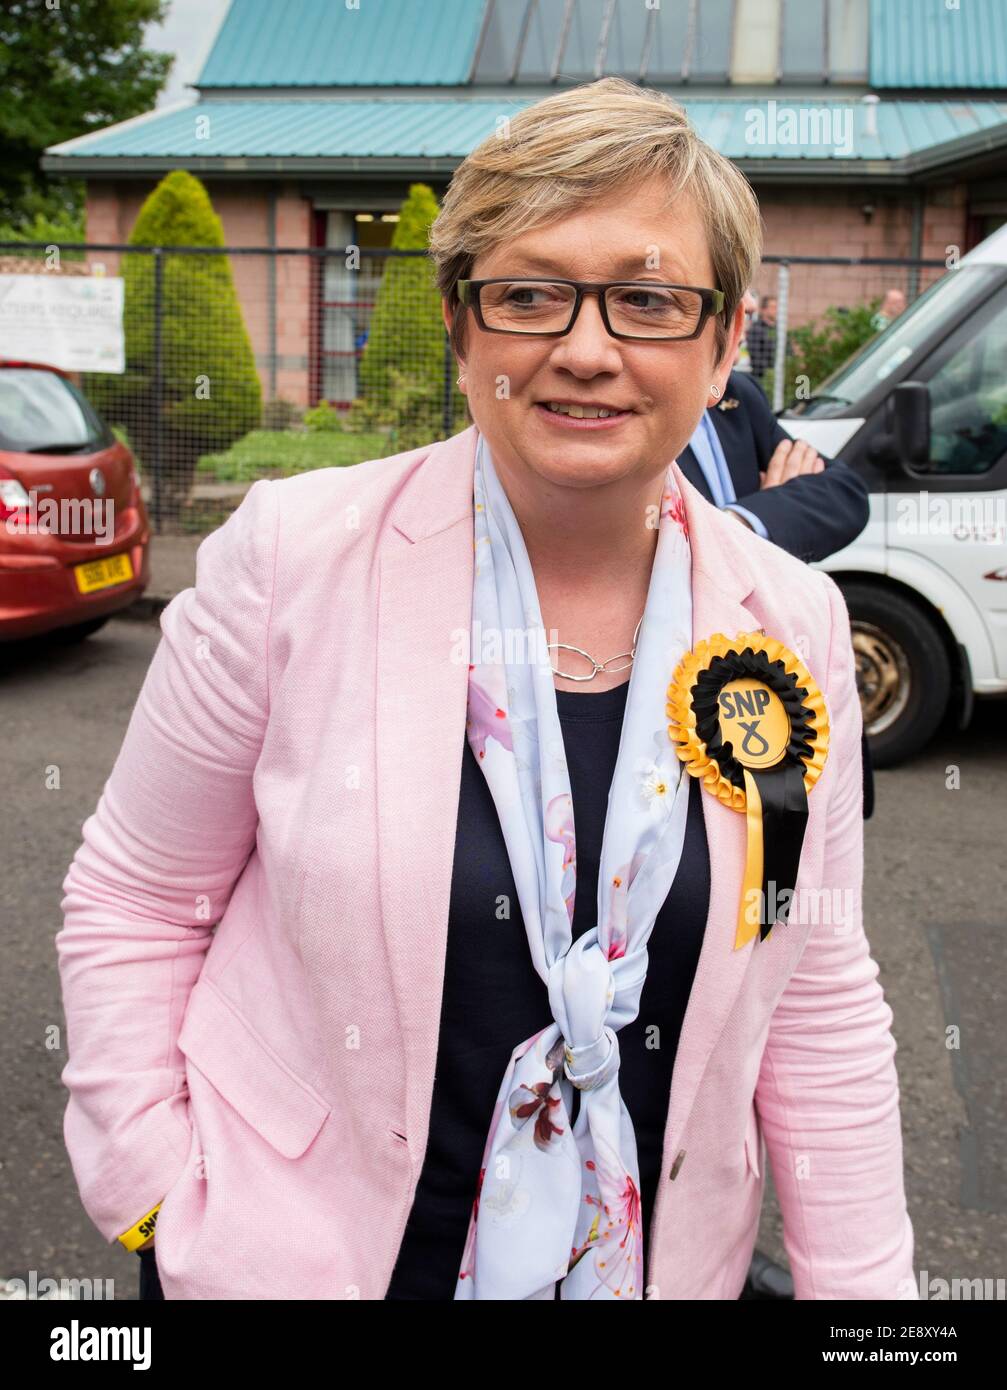 Photo Date - jeudi 1er juin 2017 : Légende originale - Joanna Cherry, photographiée, a rencontré l'esturgeon Nicola au centre de quartier d'Oxgang. Le Premier ministre Nicola Sturgeon a déclaré qu'avec sept jours avant les élections du 8 juin, les électeurs écossais doivent faire face à un choix clair entre le SNP qui veut une voix forte pour l'Écosse ou les Tories qui veulent faire taire l'Écosse. Mise à jour de la légende - lundi 1er février 2021 : Joanna Cherry a été abandonnée de l'équipe du parti national écossais à Westminster. Le député du Sud-Ouest d'Édimbourg a déclaré qu'elle avait été détournée de la position de justice 'desp Banque D'Images